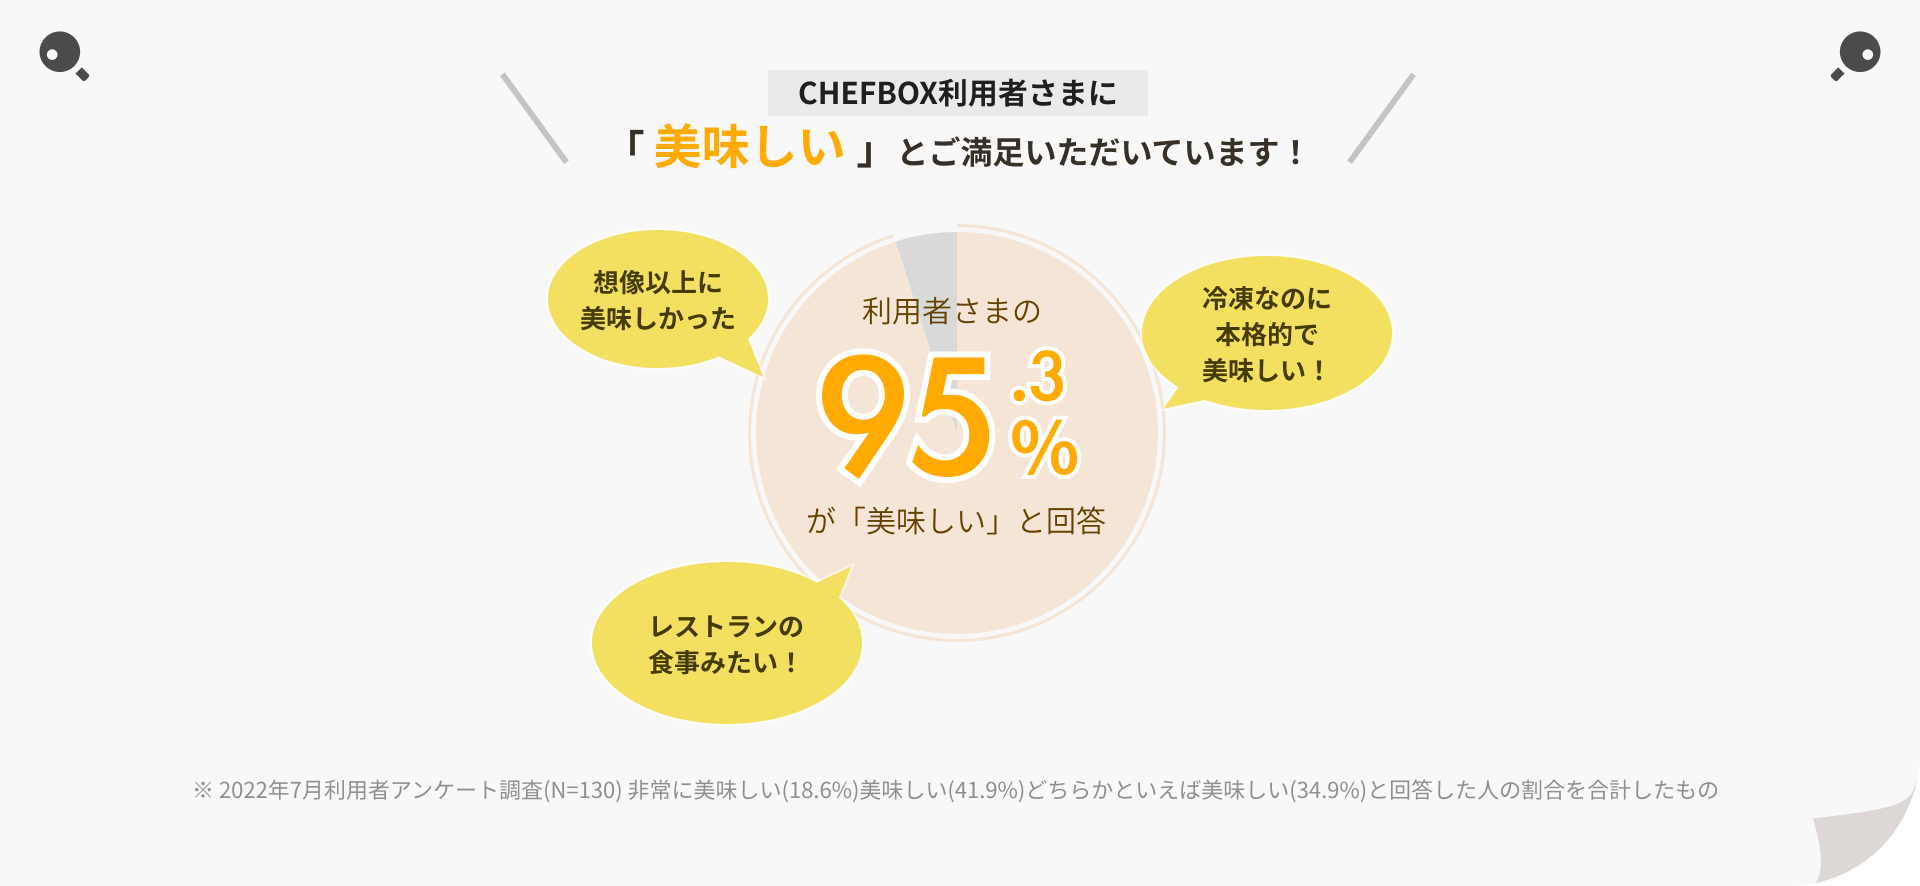 CHEFBOX利用者さまに「 美味しい 」とご満足いただいています。利用者さまの95.3%が「美味しい」と回答。※ 2022年7月利用者アンケート調査(N=130) 非常に美味しい(18.6%)美味しい(41.9%)どちらかといえば美味しい(34.9%)と回答した人の割合を合計したもの。主に想像以上に美味しかった、レストランの食事みたい、冷凍なのに本格的で美味しいという声をいただきました。